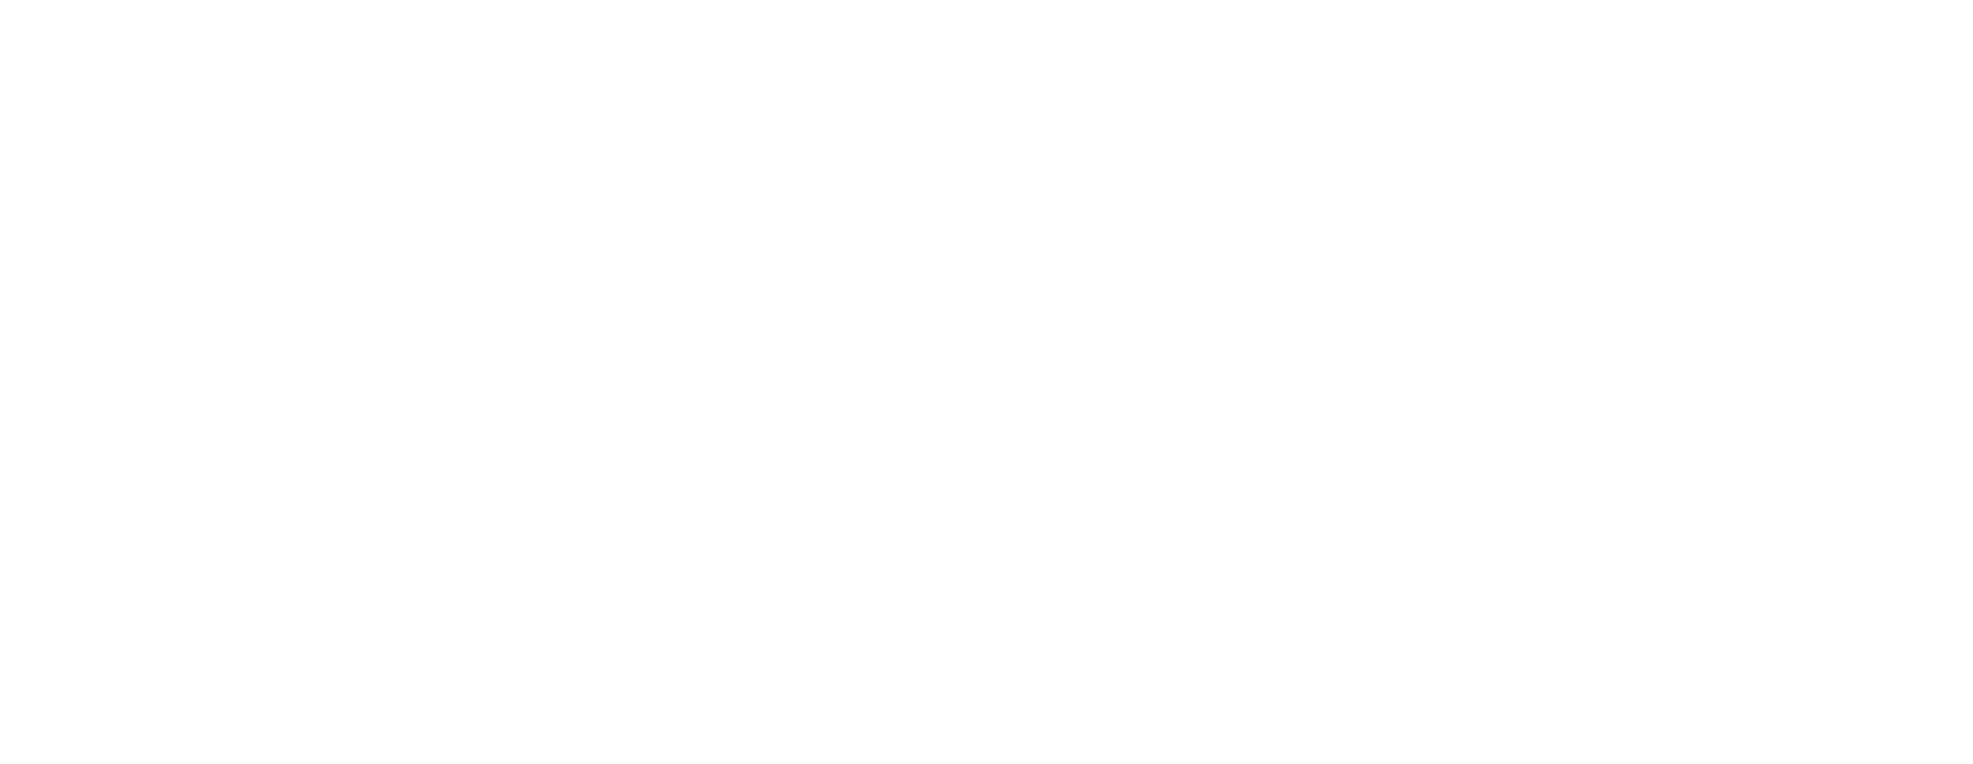 logo hector le collector - collecte de déchets en entreprise